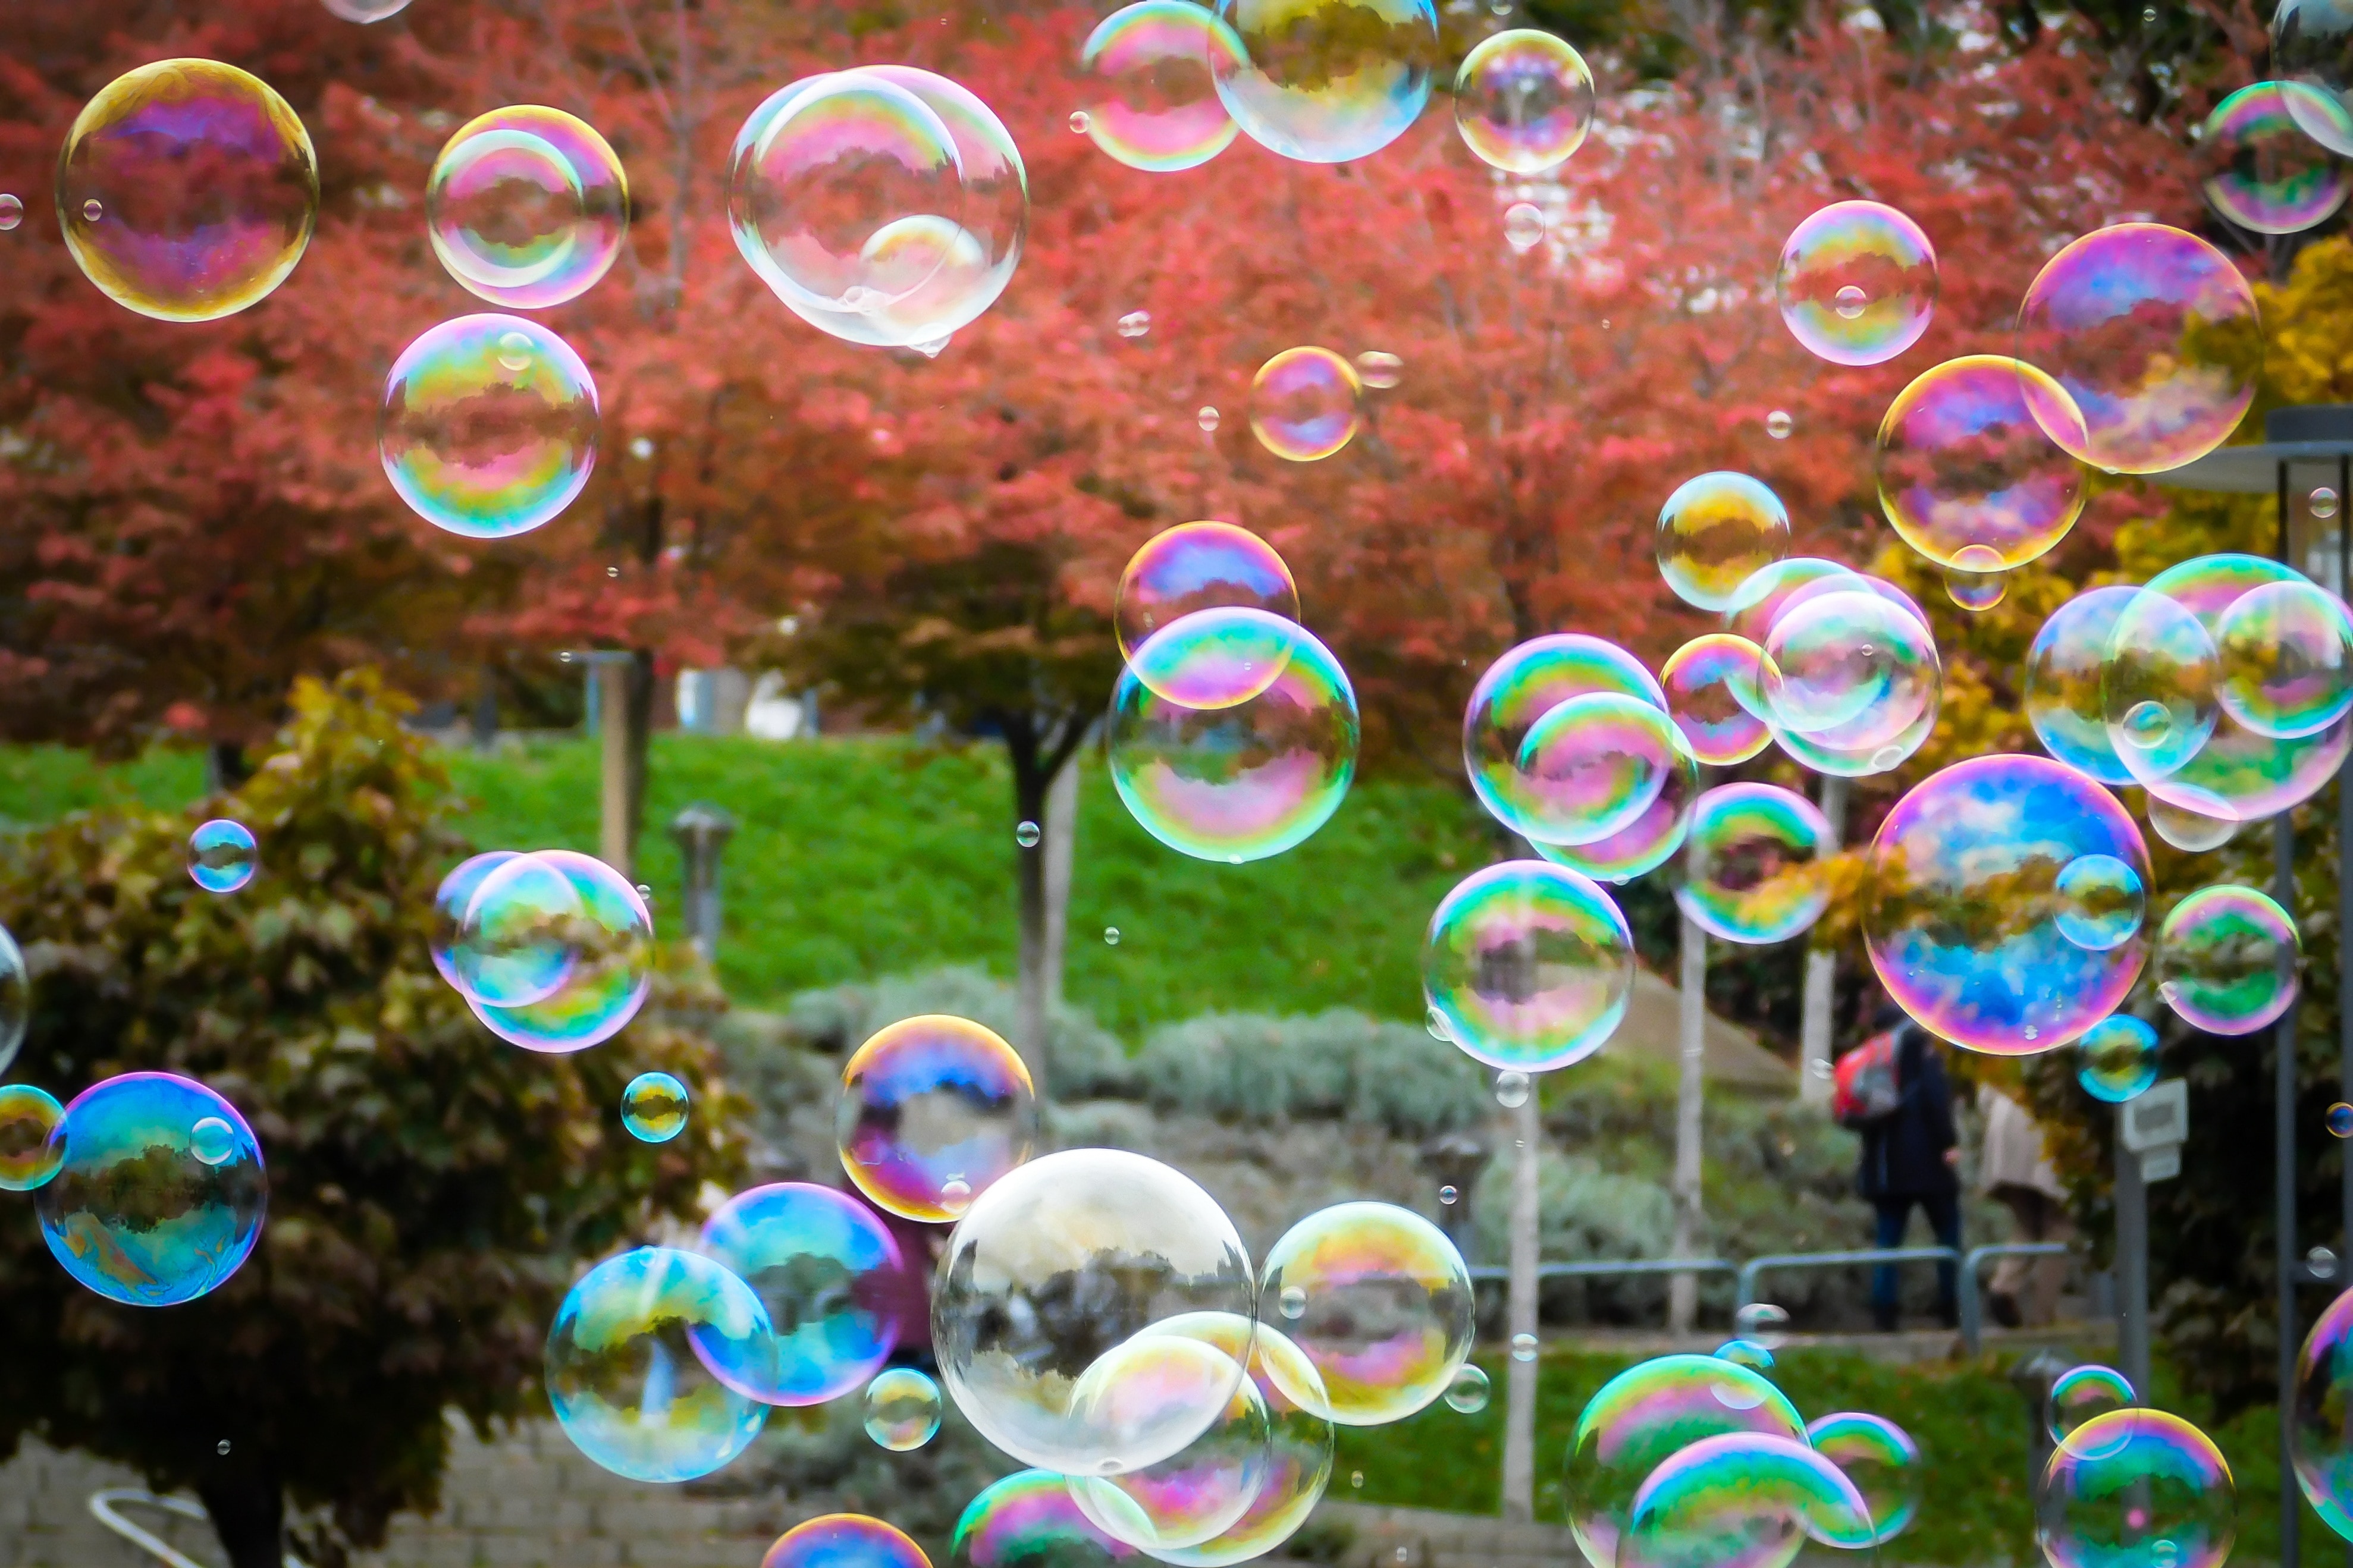 Fly, Blow, Soap Bubbles, Float, Balls, soap sud, bubble wand